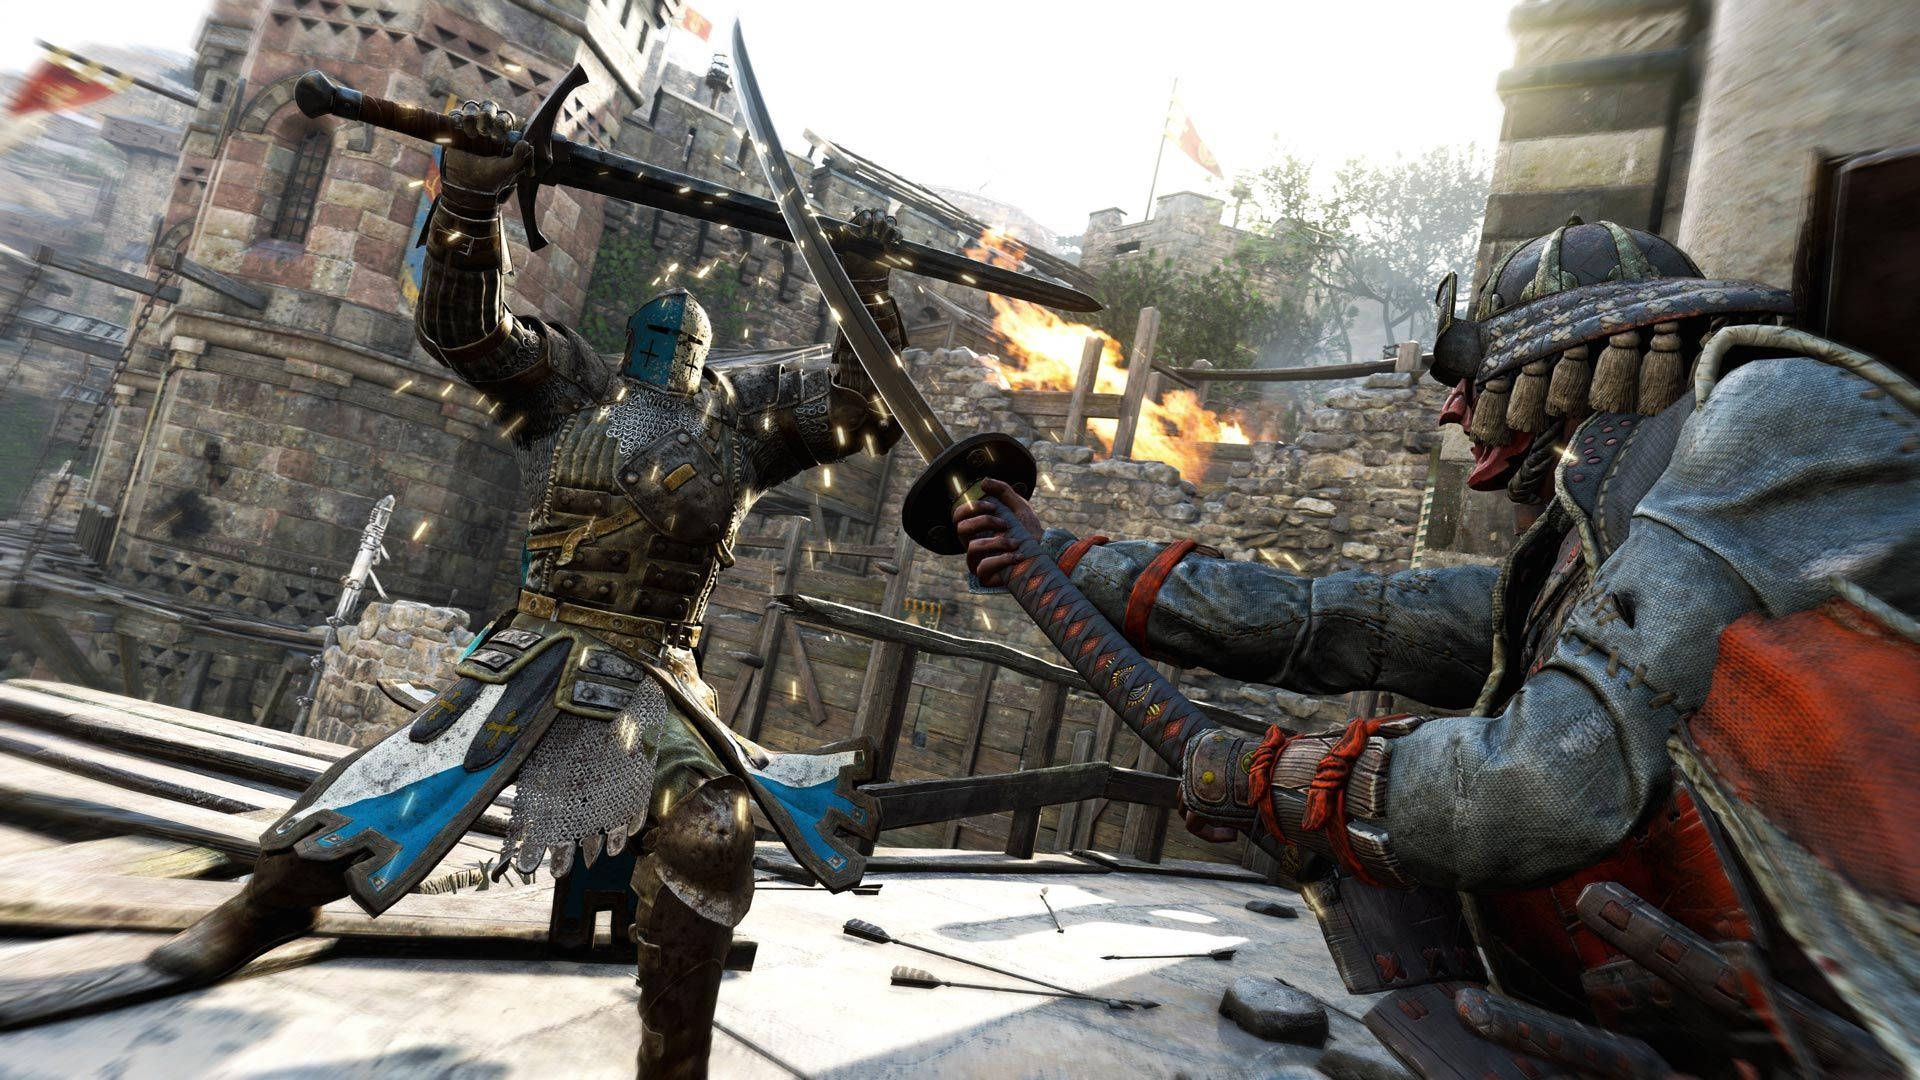 Epic Battle: Knight vs Samurai in For Honor Wallpaper